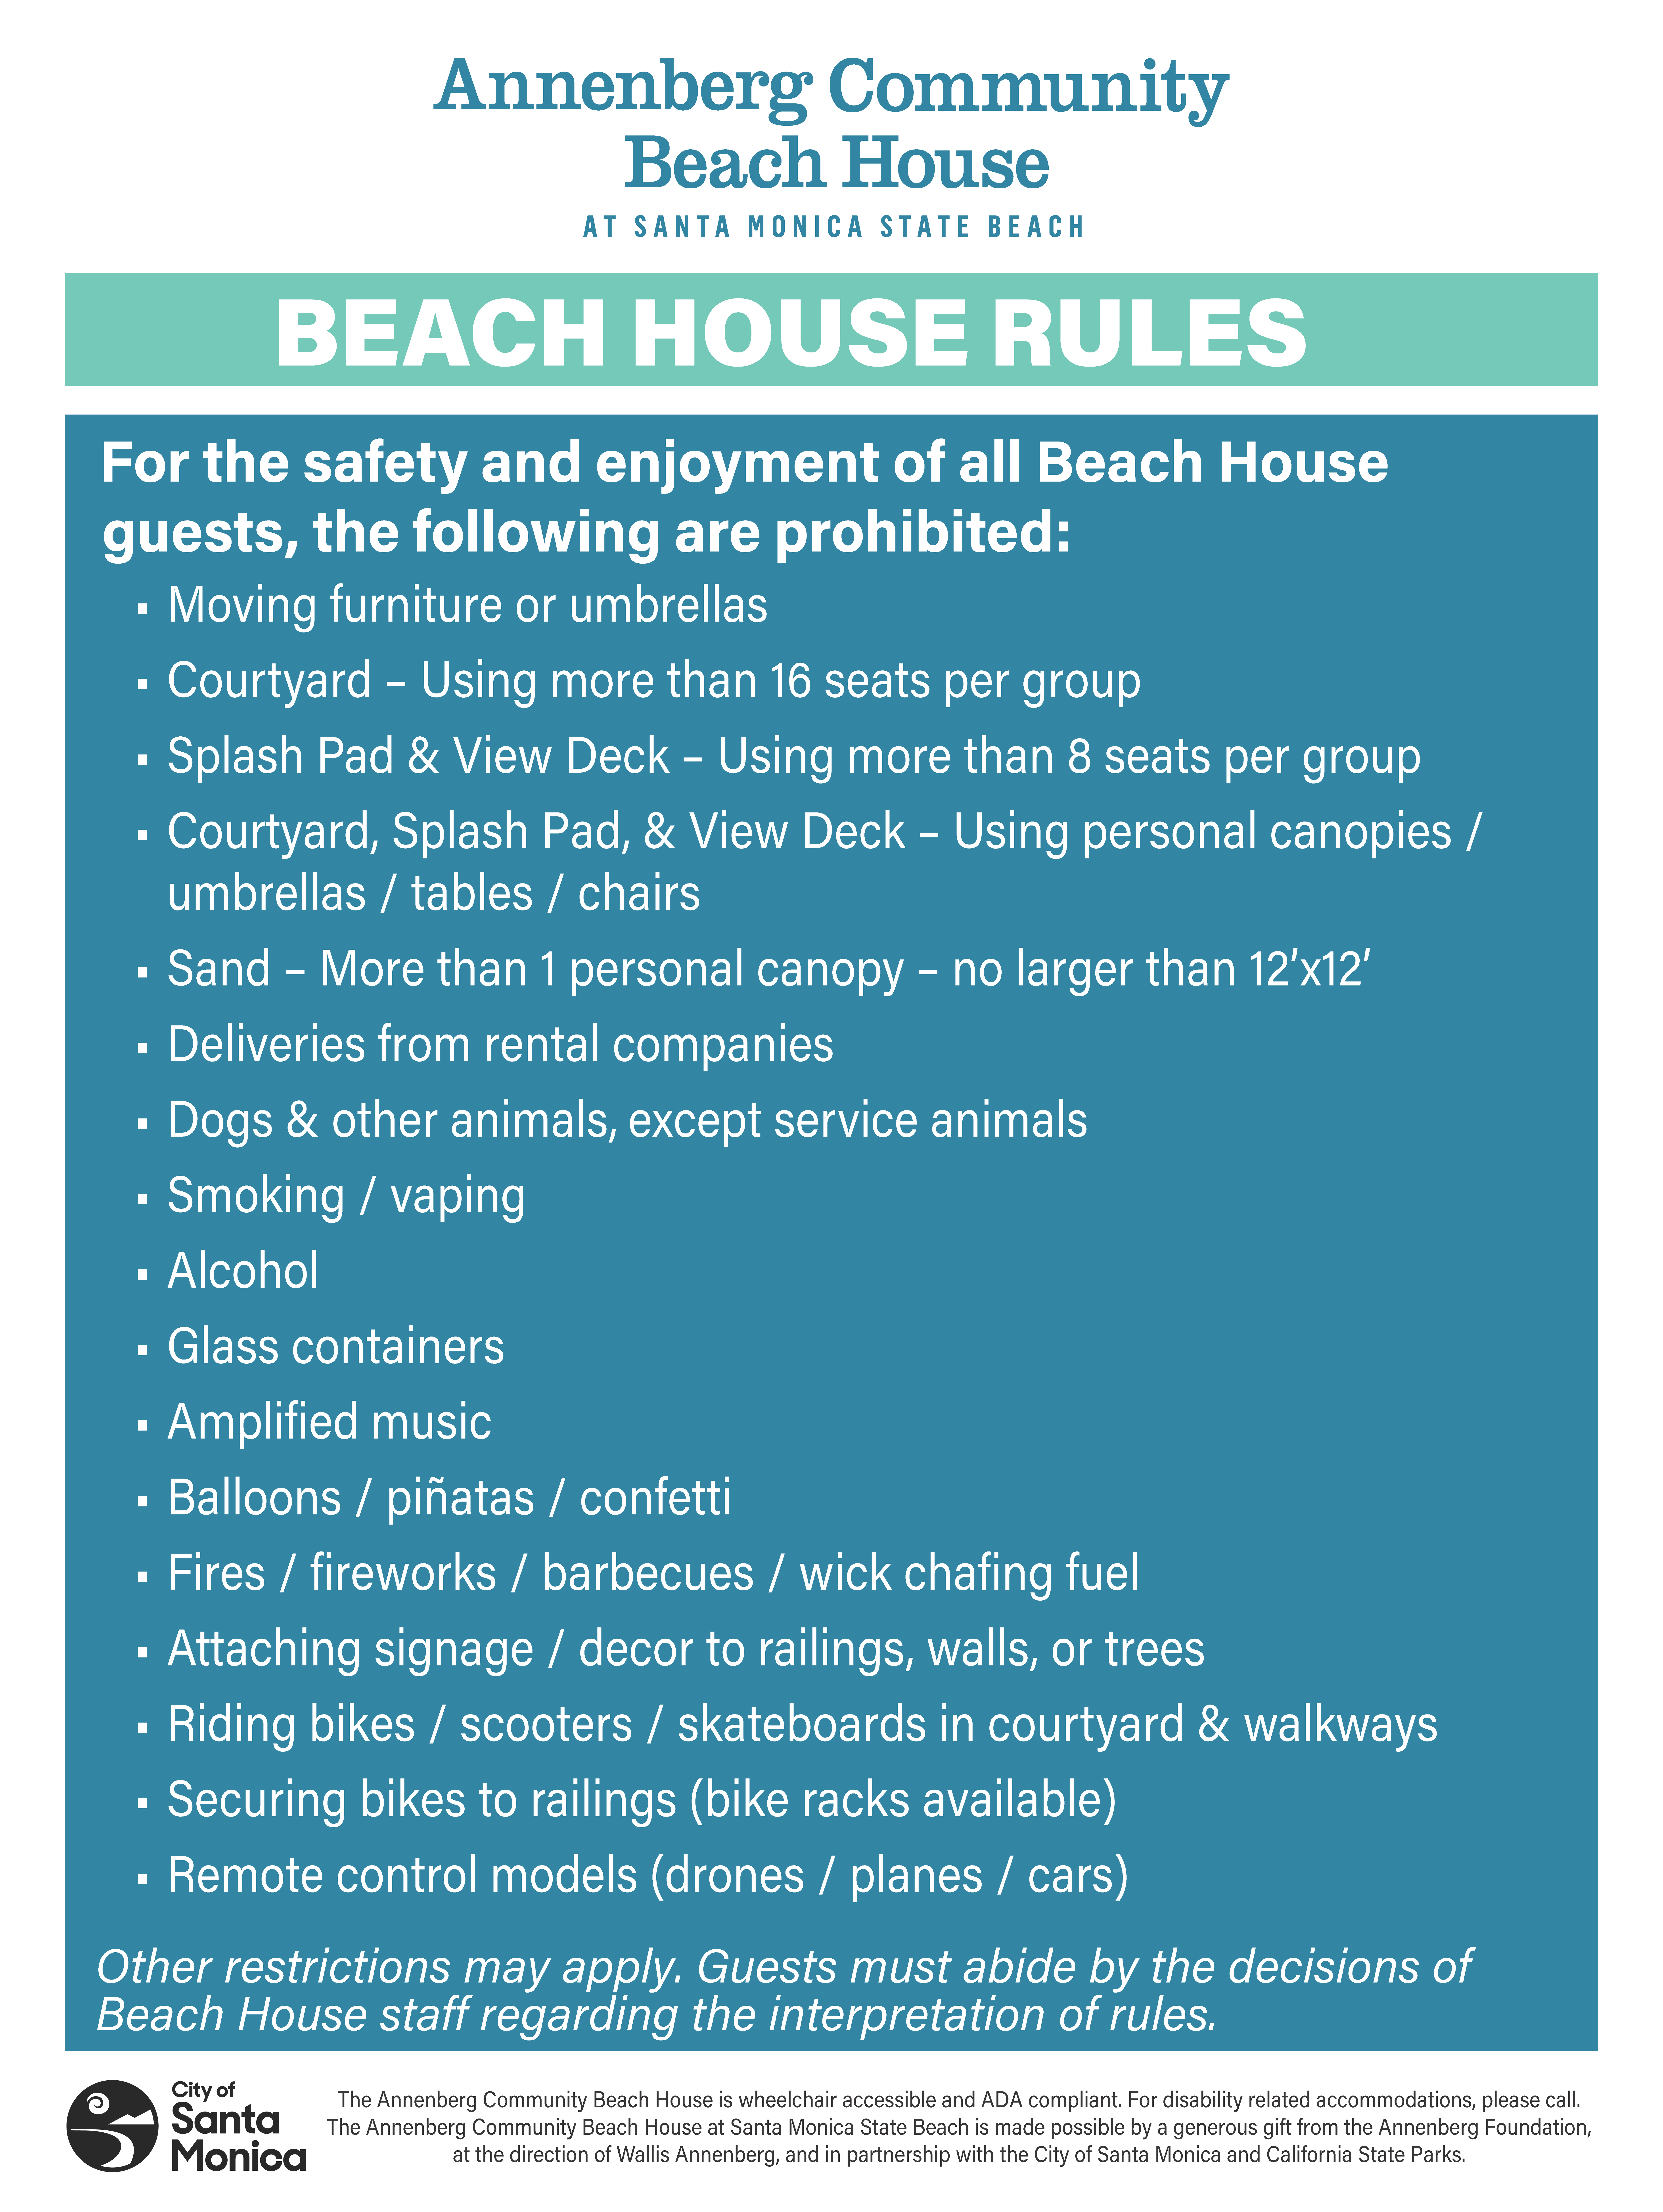 Beach House Rules 2022